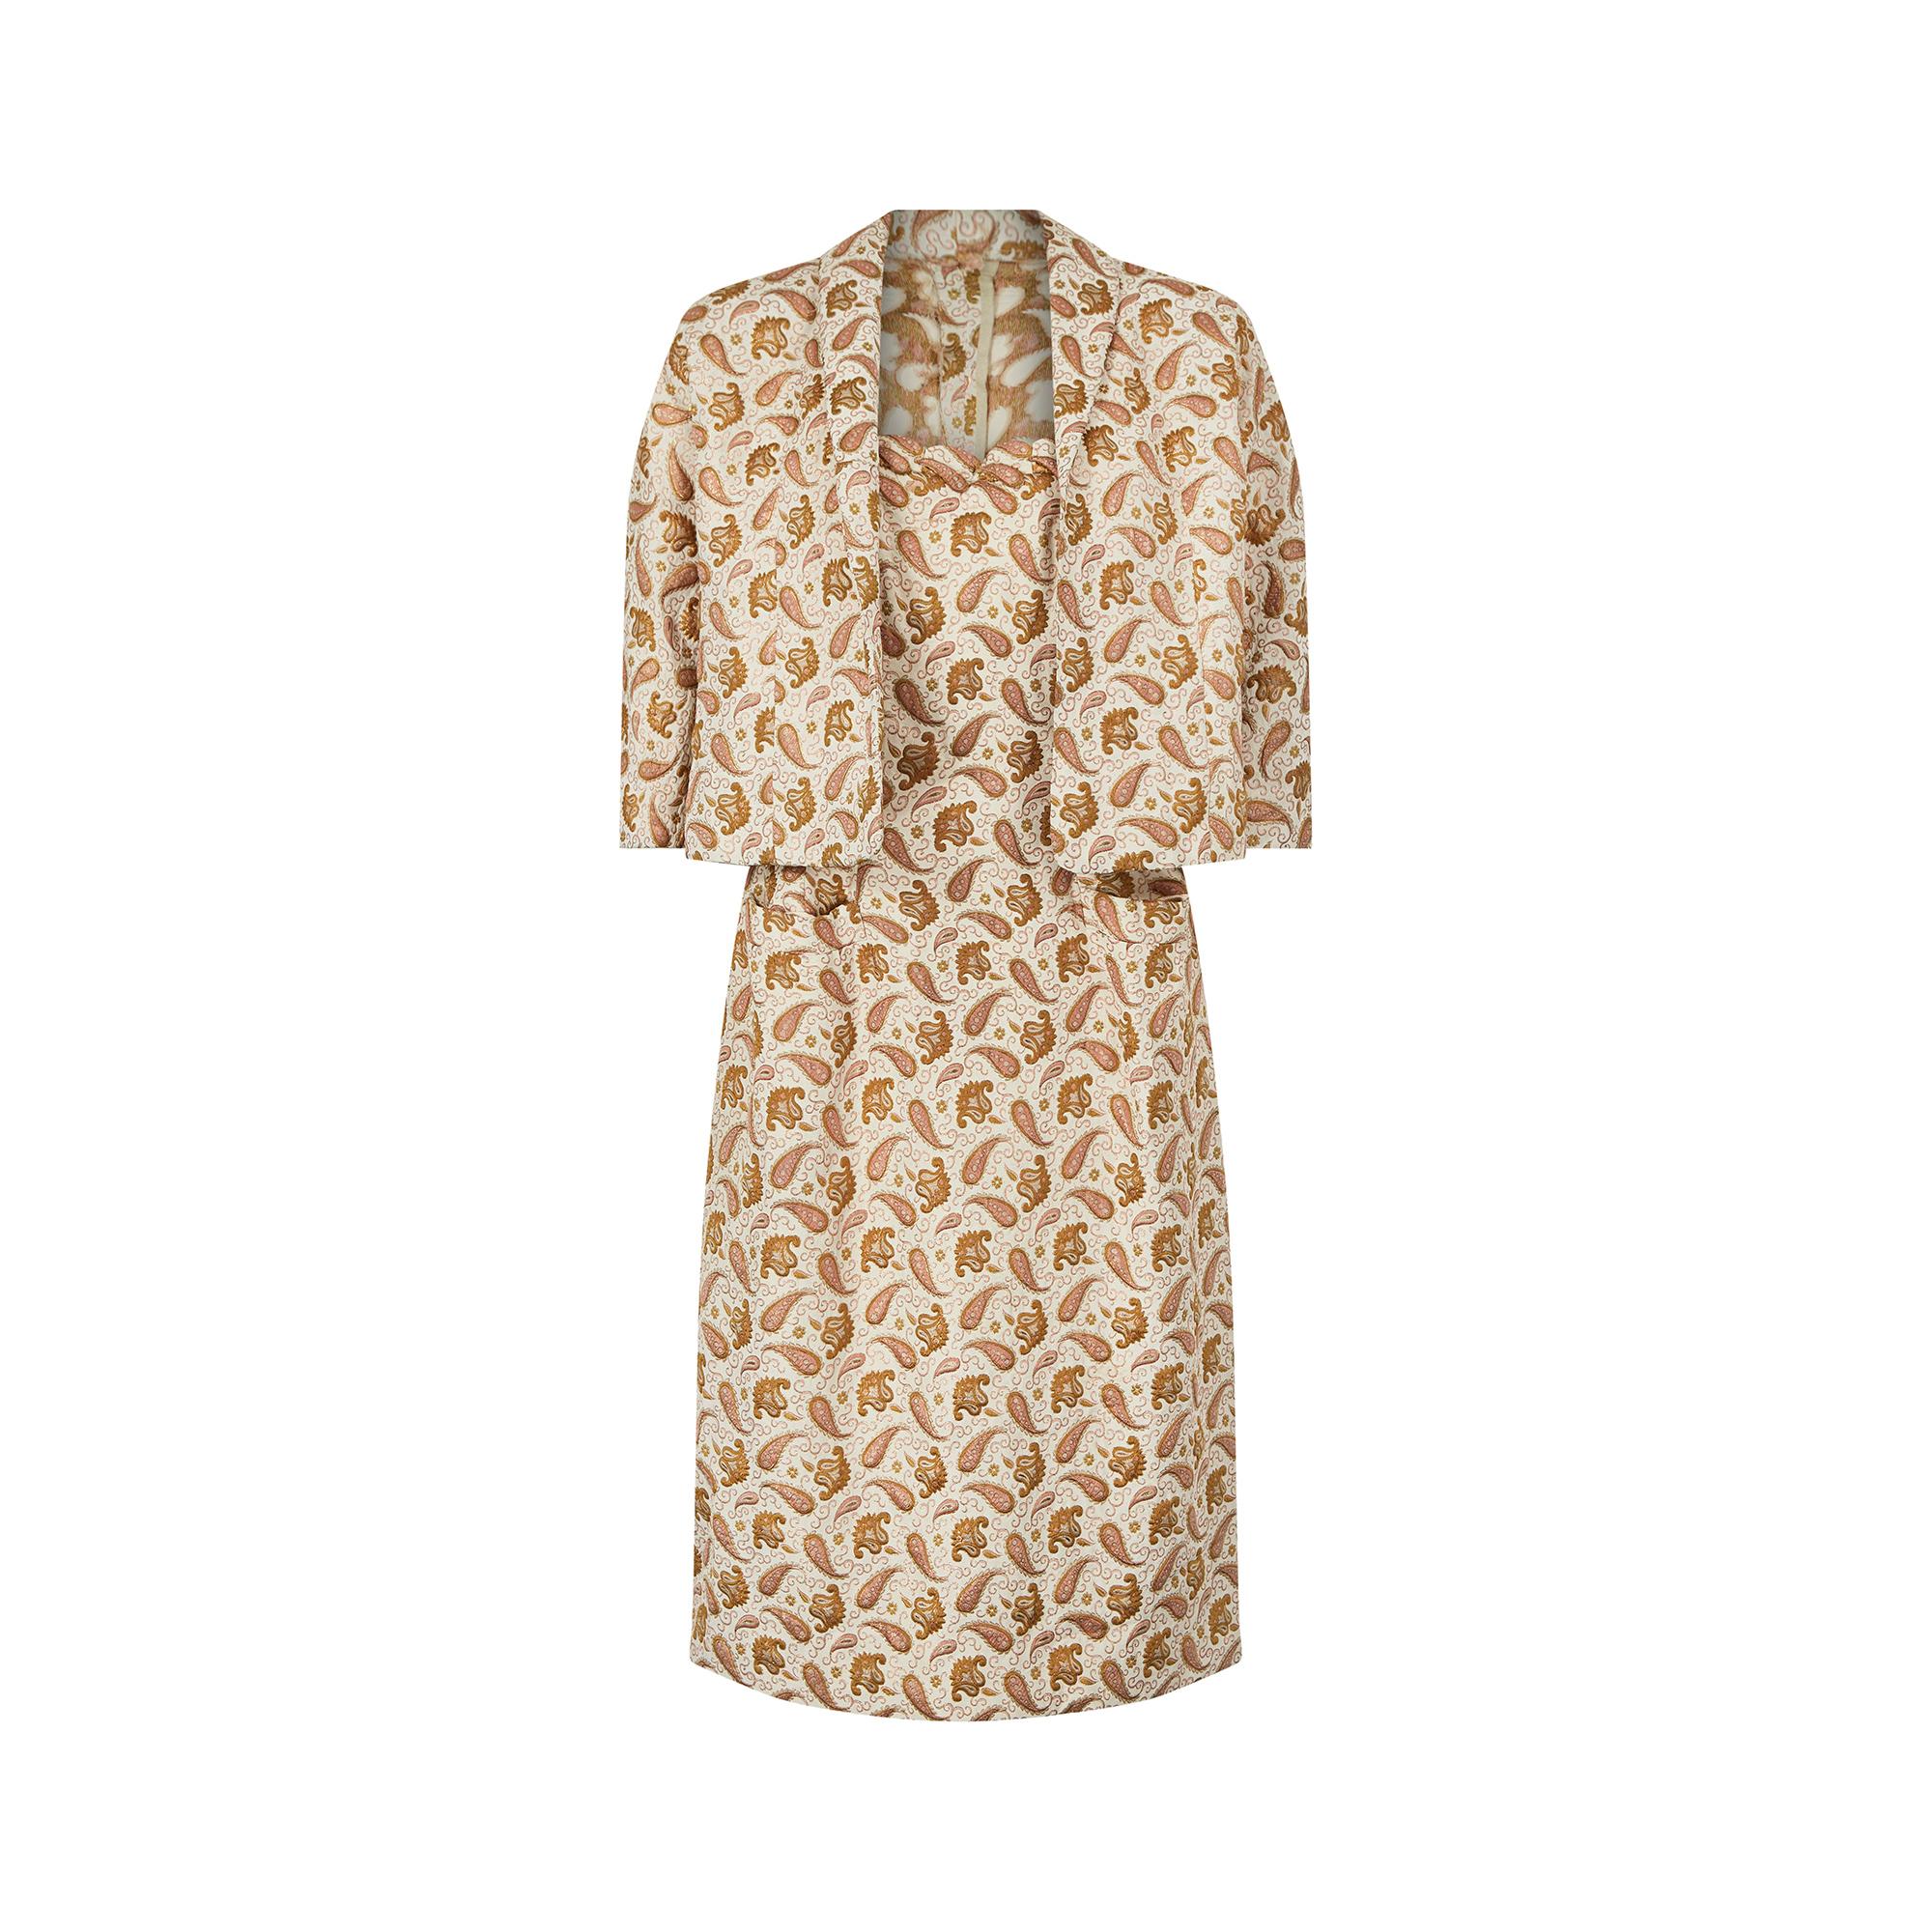 Cet ensemble de robe couture deux pièces en brocart de soie des années 1950 présente un étonnant motif cachemire en fils roses et dorés. La robe présente une bordure festonnée sur le haut du corsage et trois séries de pinces descendant du buste pour